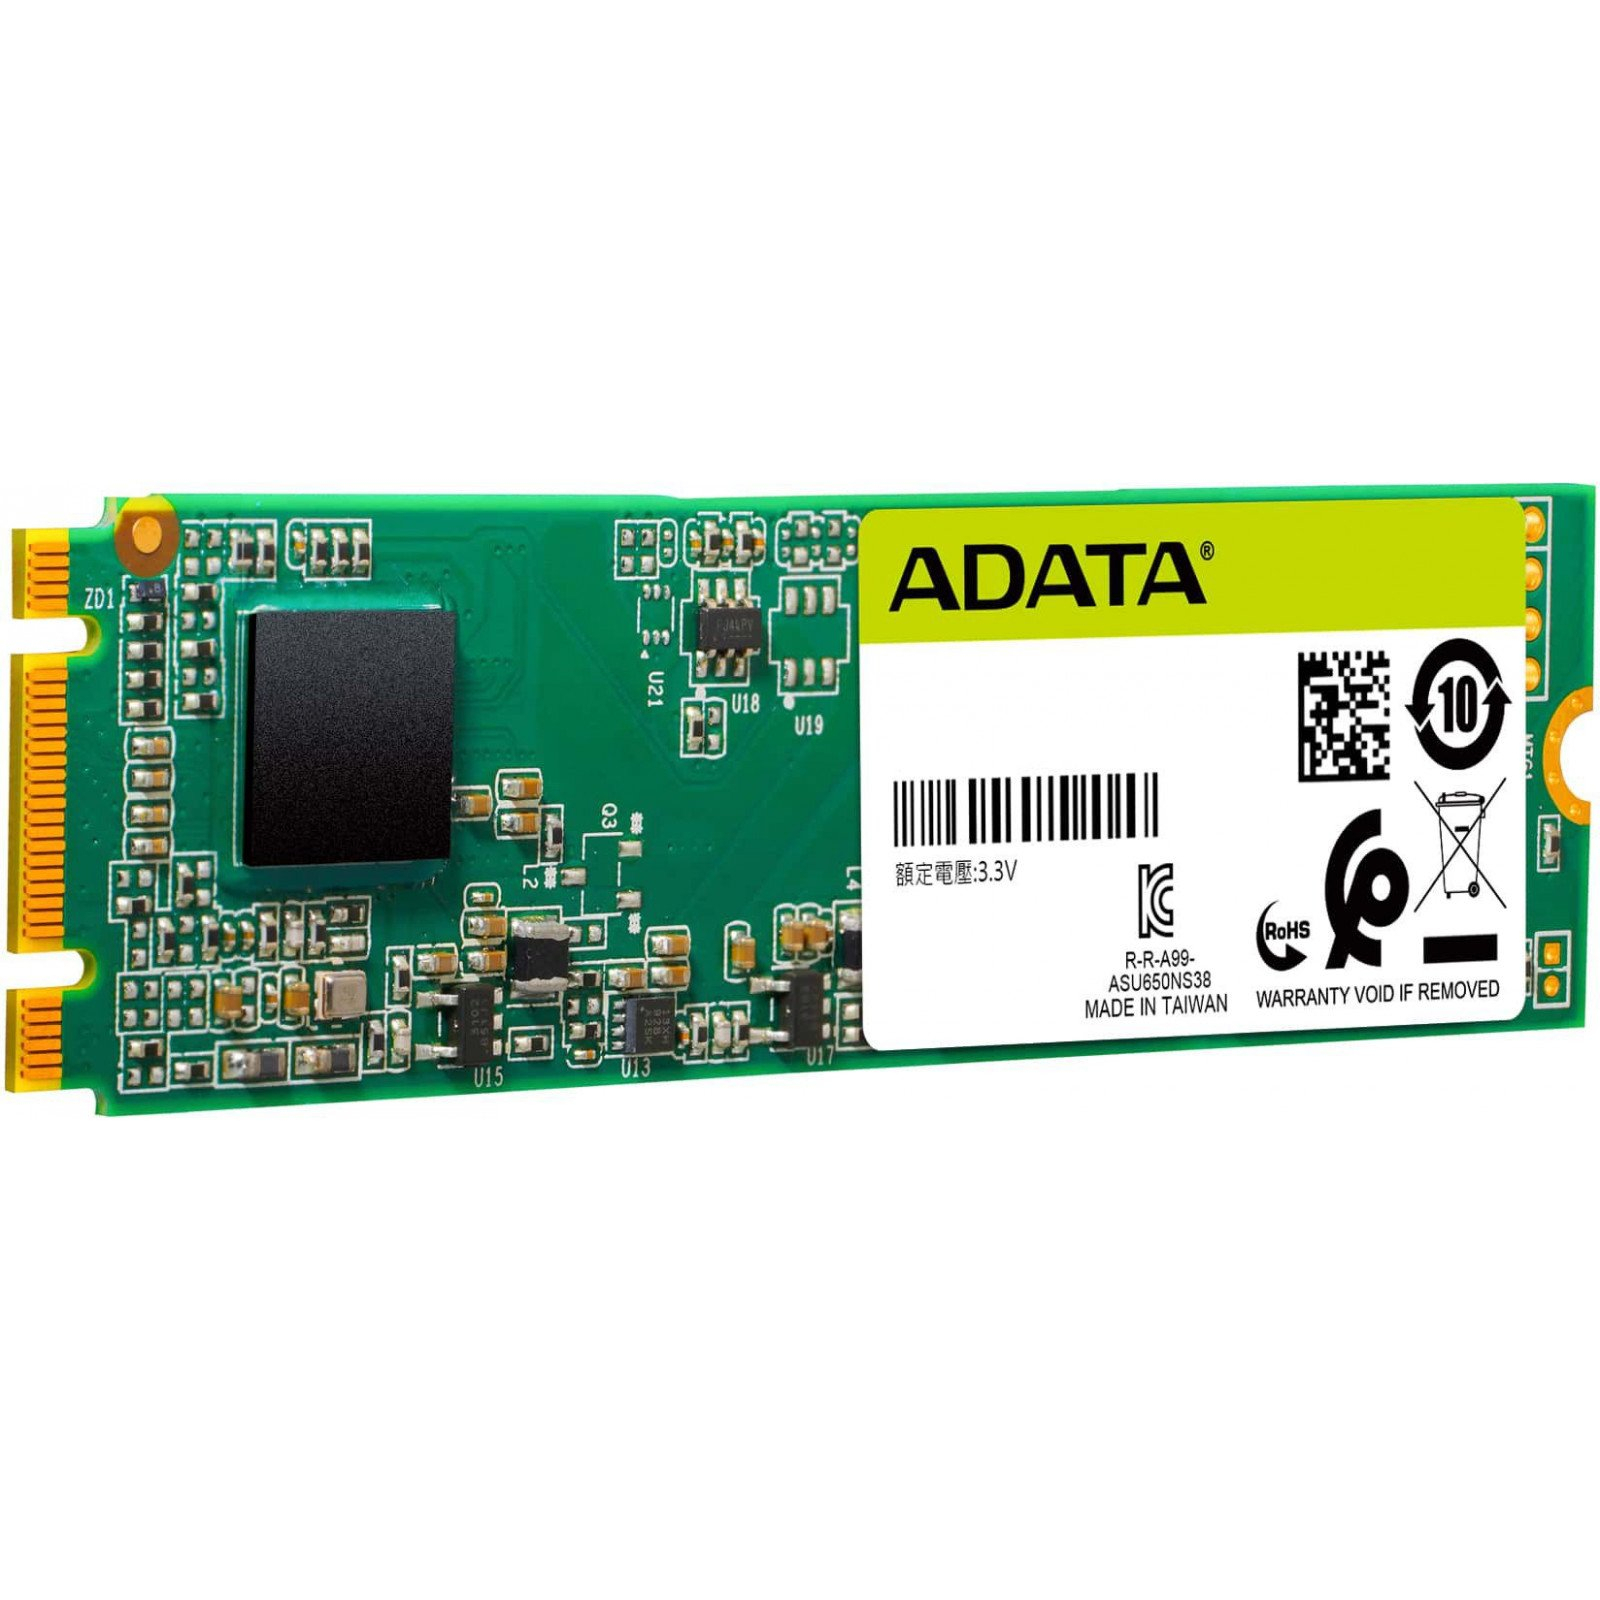 Накопитель SSD M.2 2280 480GB ADATA (ASU650NS38-480GT-C) изображение 3